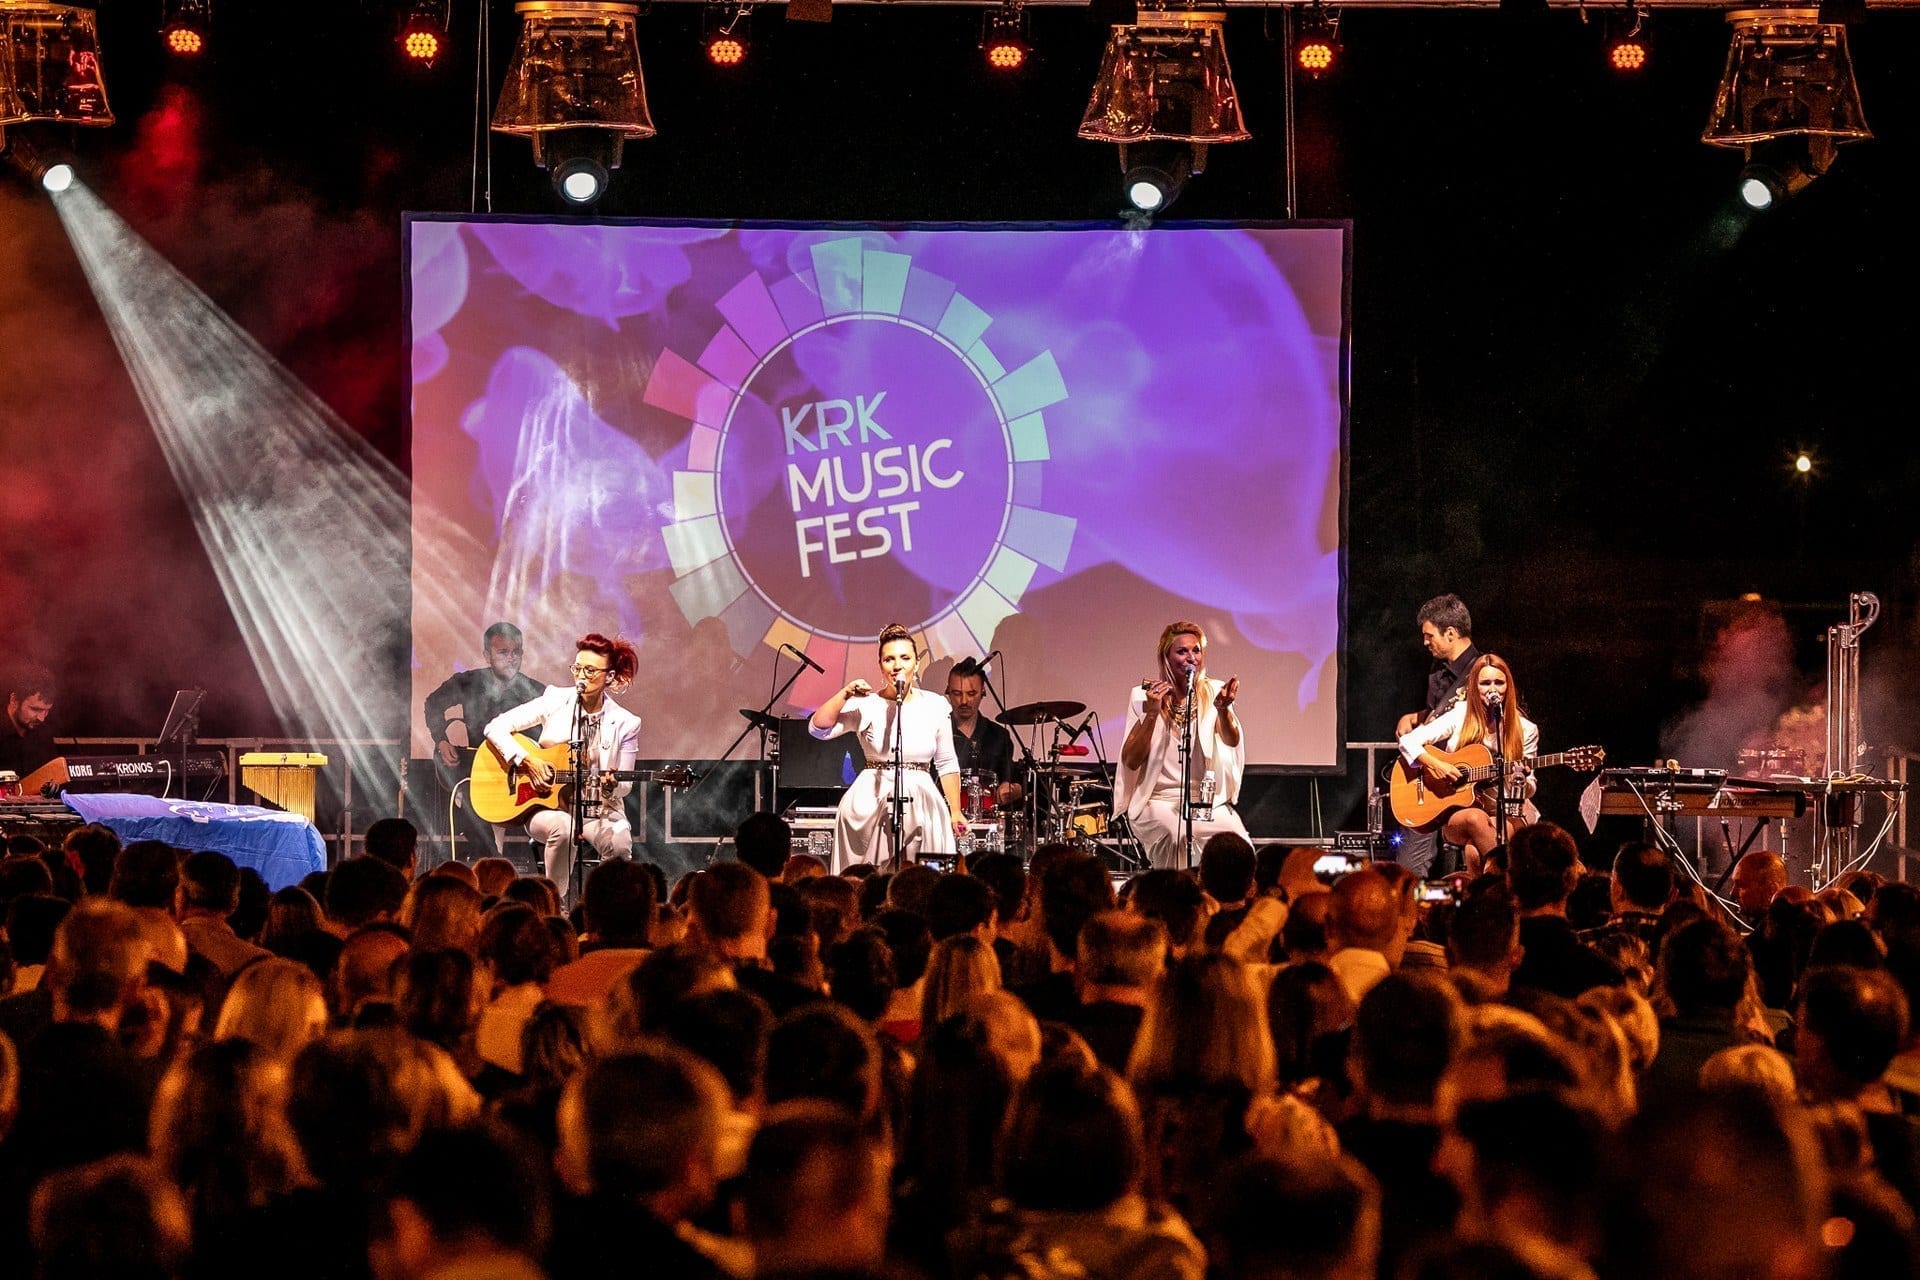 Krk Music Fest, Krk town (image source: City of Krk Tourist Board)